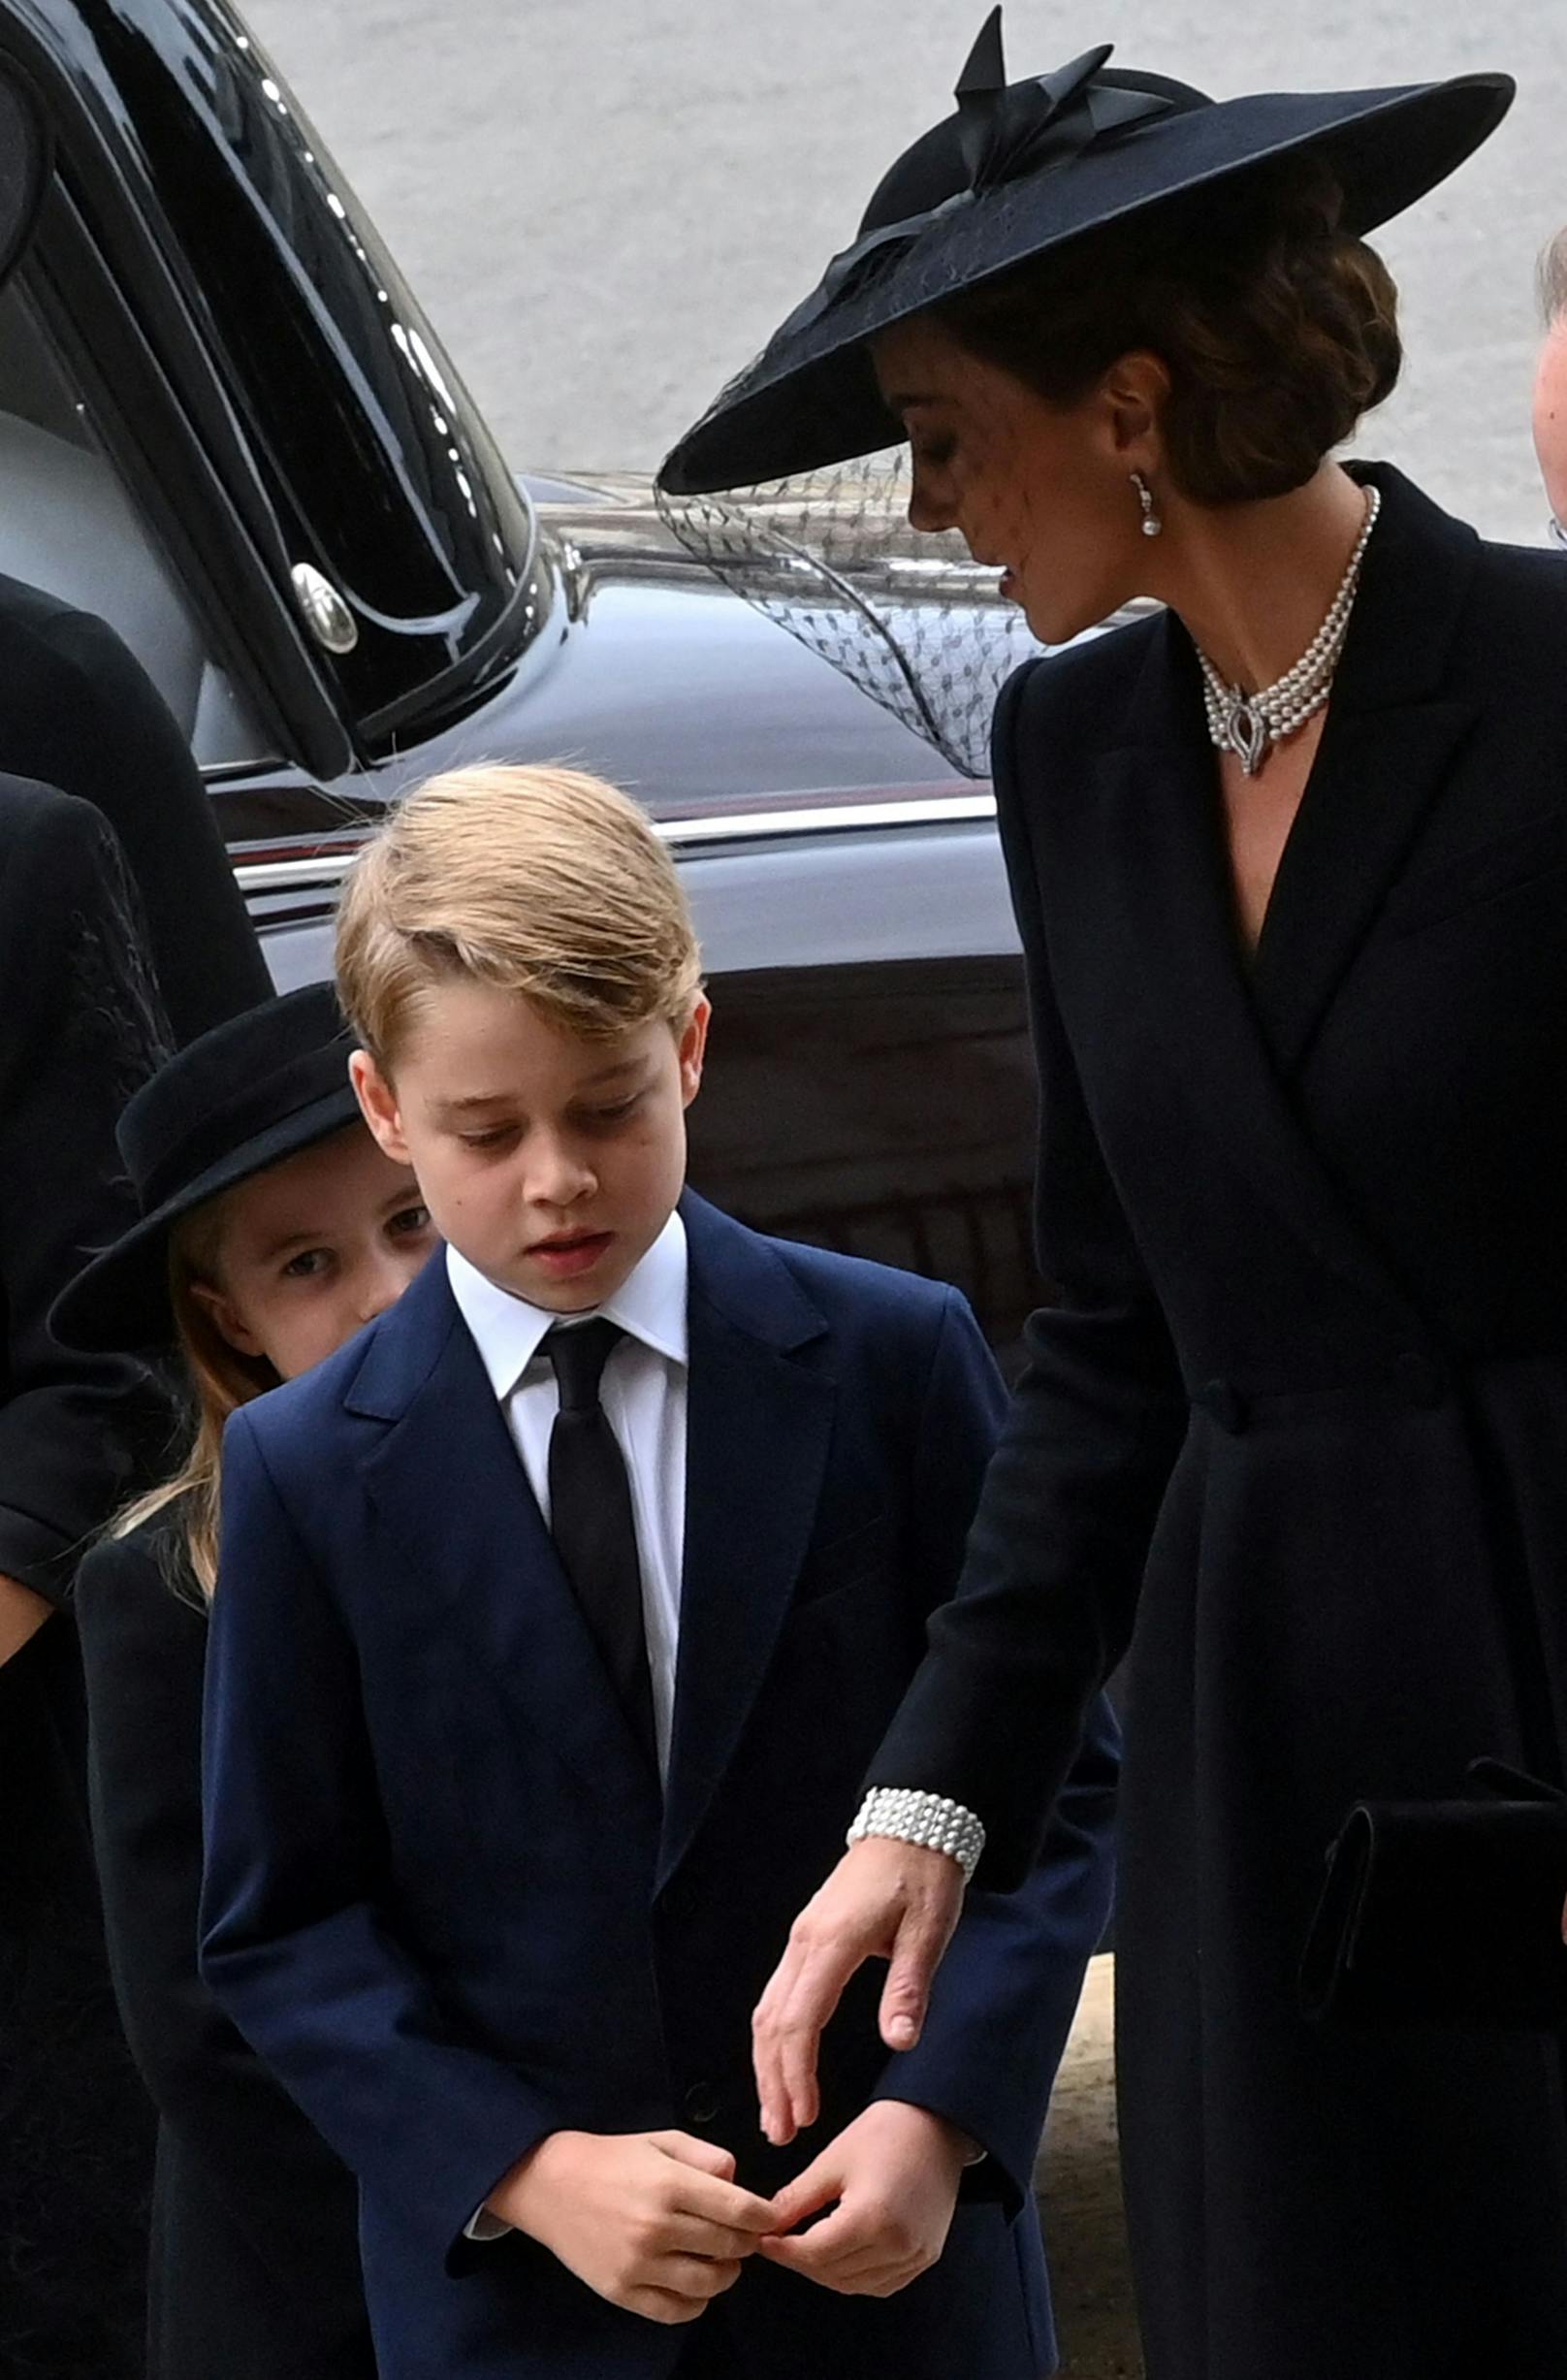 Prinzessin Kate selbst trug die Kette mit tropfenförmiger Diamantspange in der Mitte erstmals zum 70. Jahrestag von Prinz Philip und Queen Elisabeth II. im Jahr 2017. Damit eine ganz besonders Hommage an die Königin und ihr Leben.